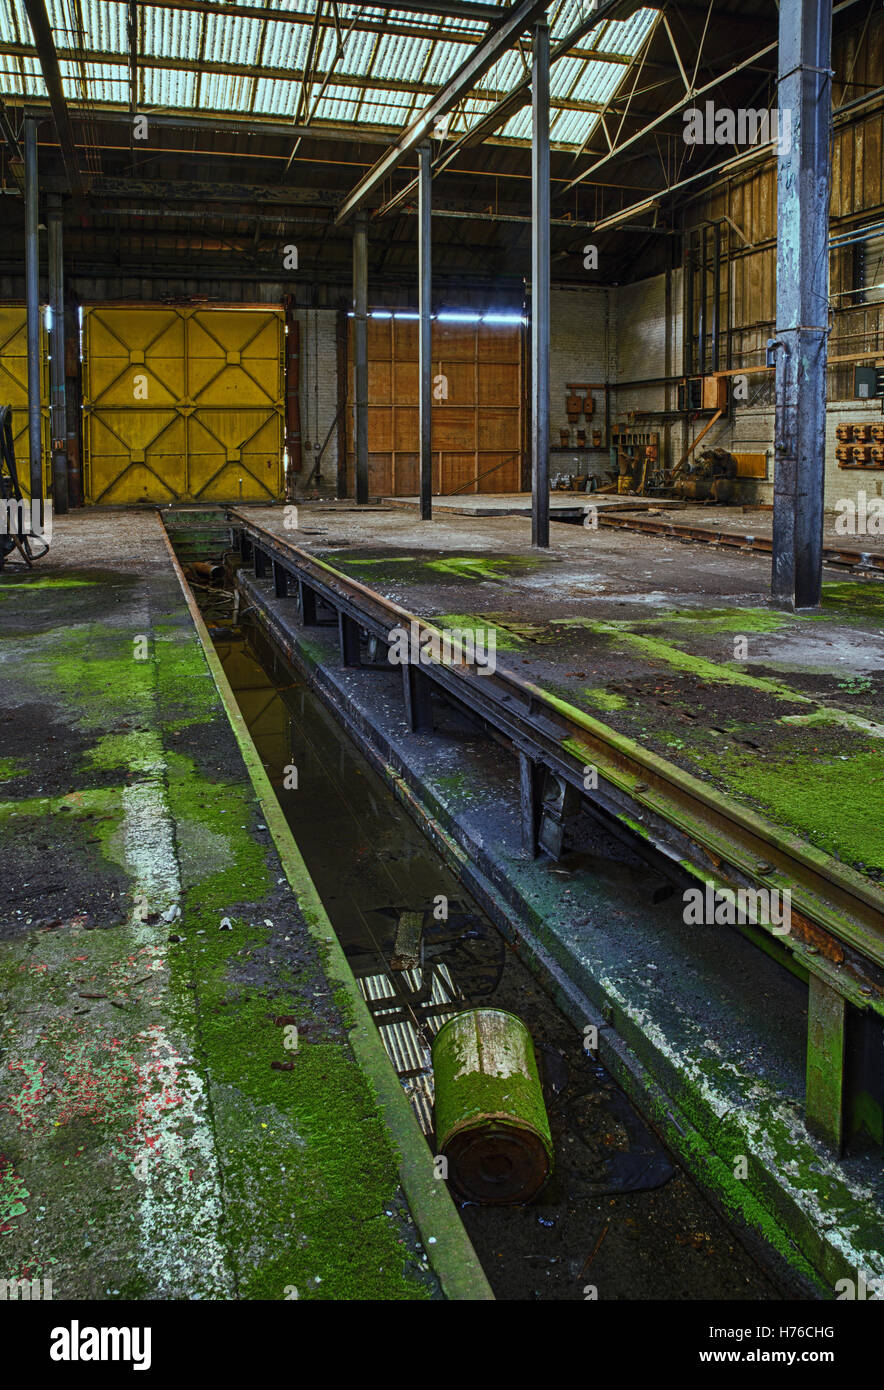 Atelier de fer abandonnées, l'exploration urbaine, hdr Banque D'Images